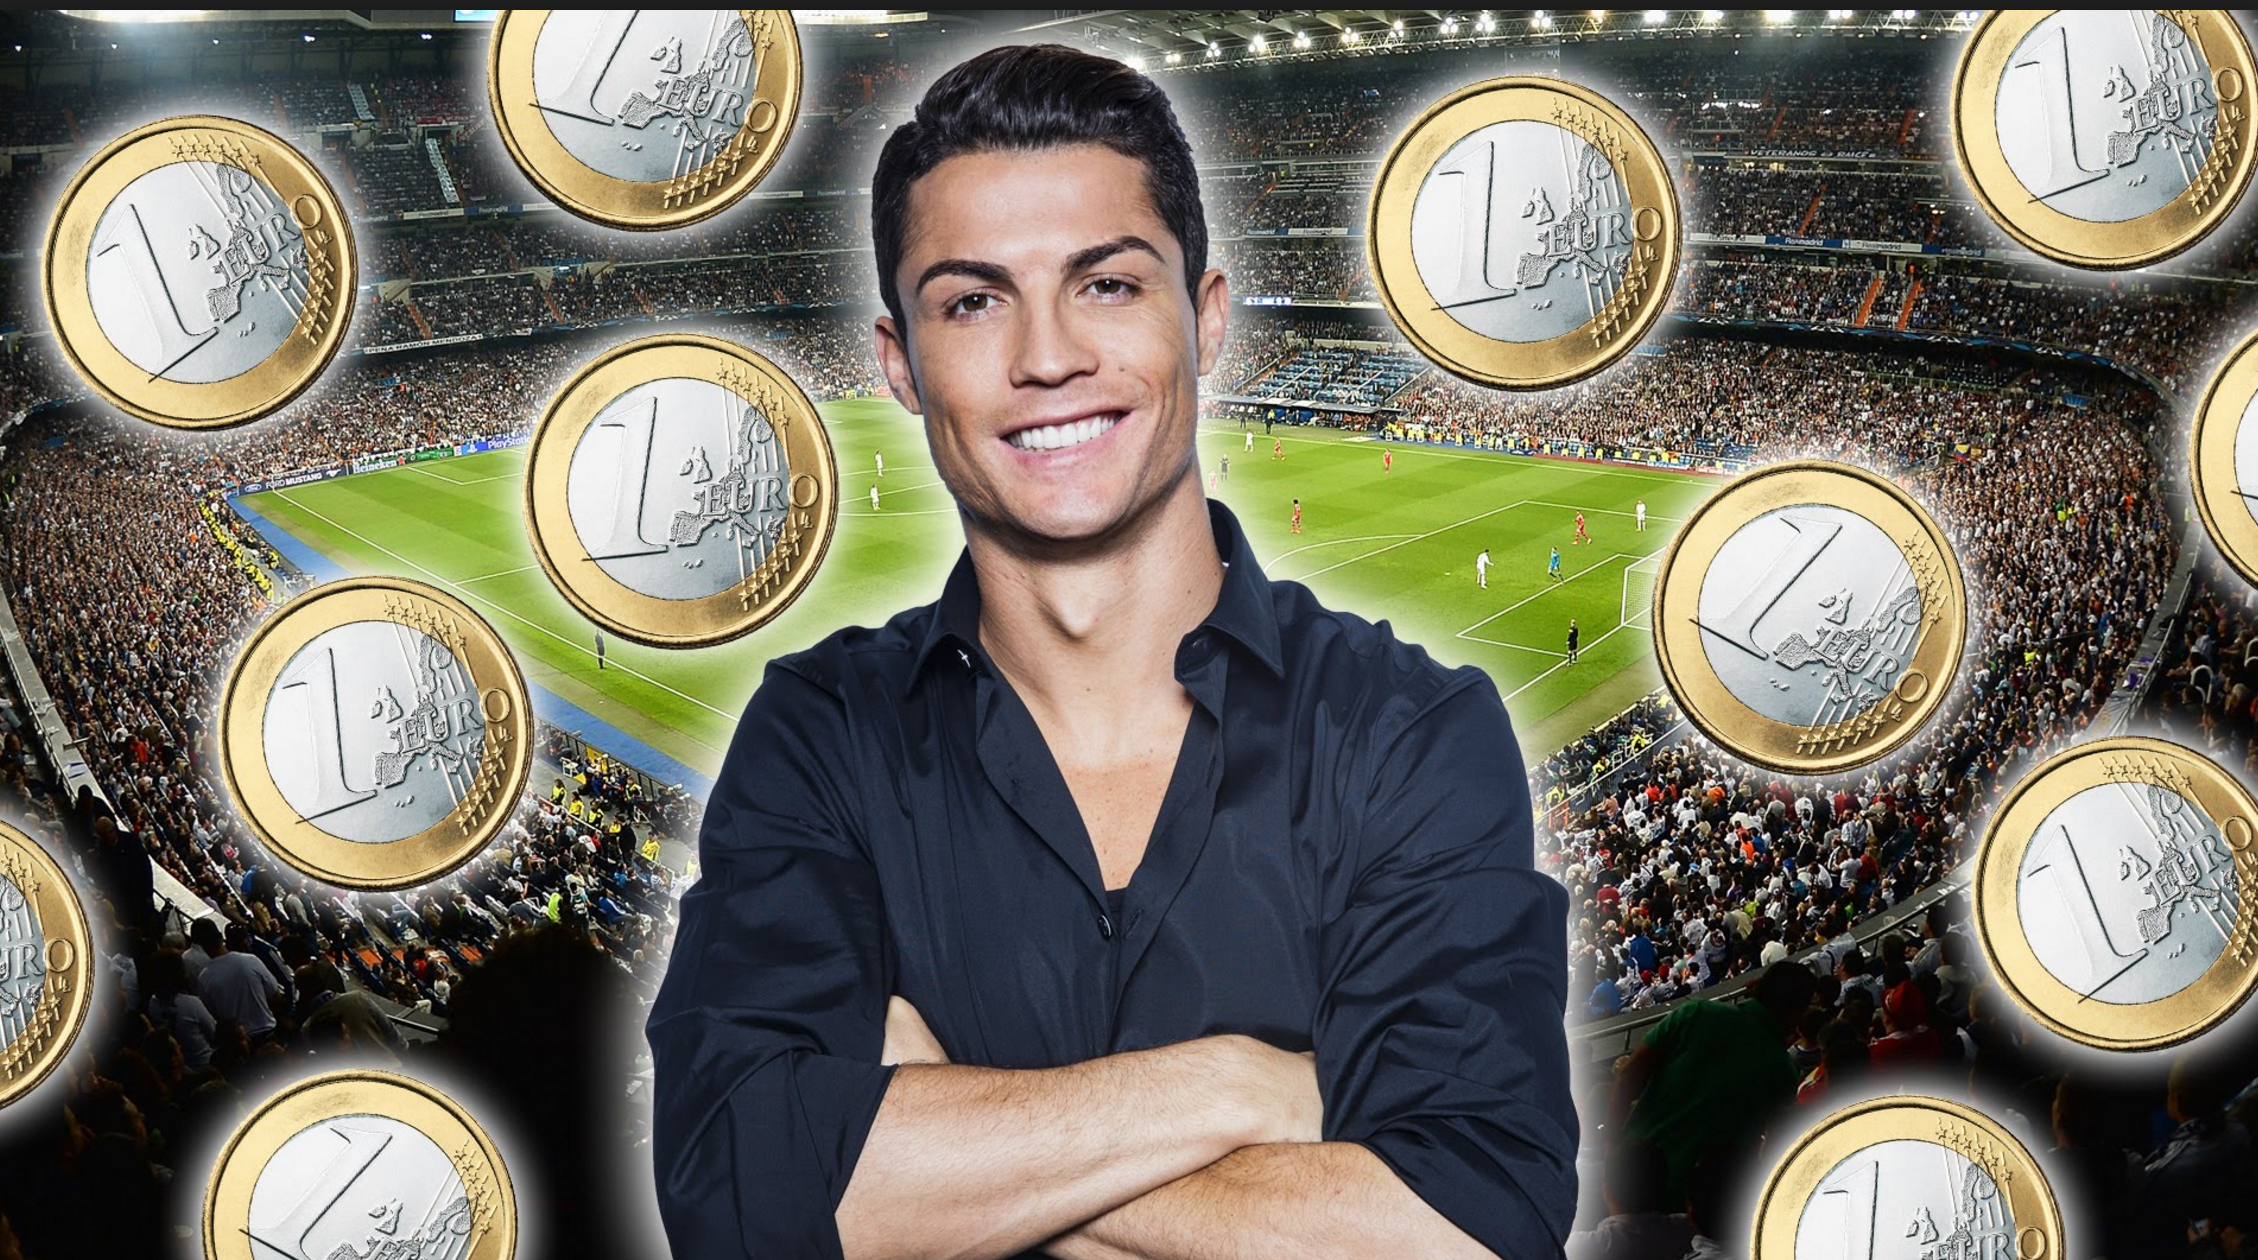 Cristiano Ronaldo Es El Deportista Mejor Pagado Del Mundo. Mira Cuanto Dinero Recibe Este Futbolista Día Tras Día